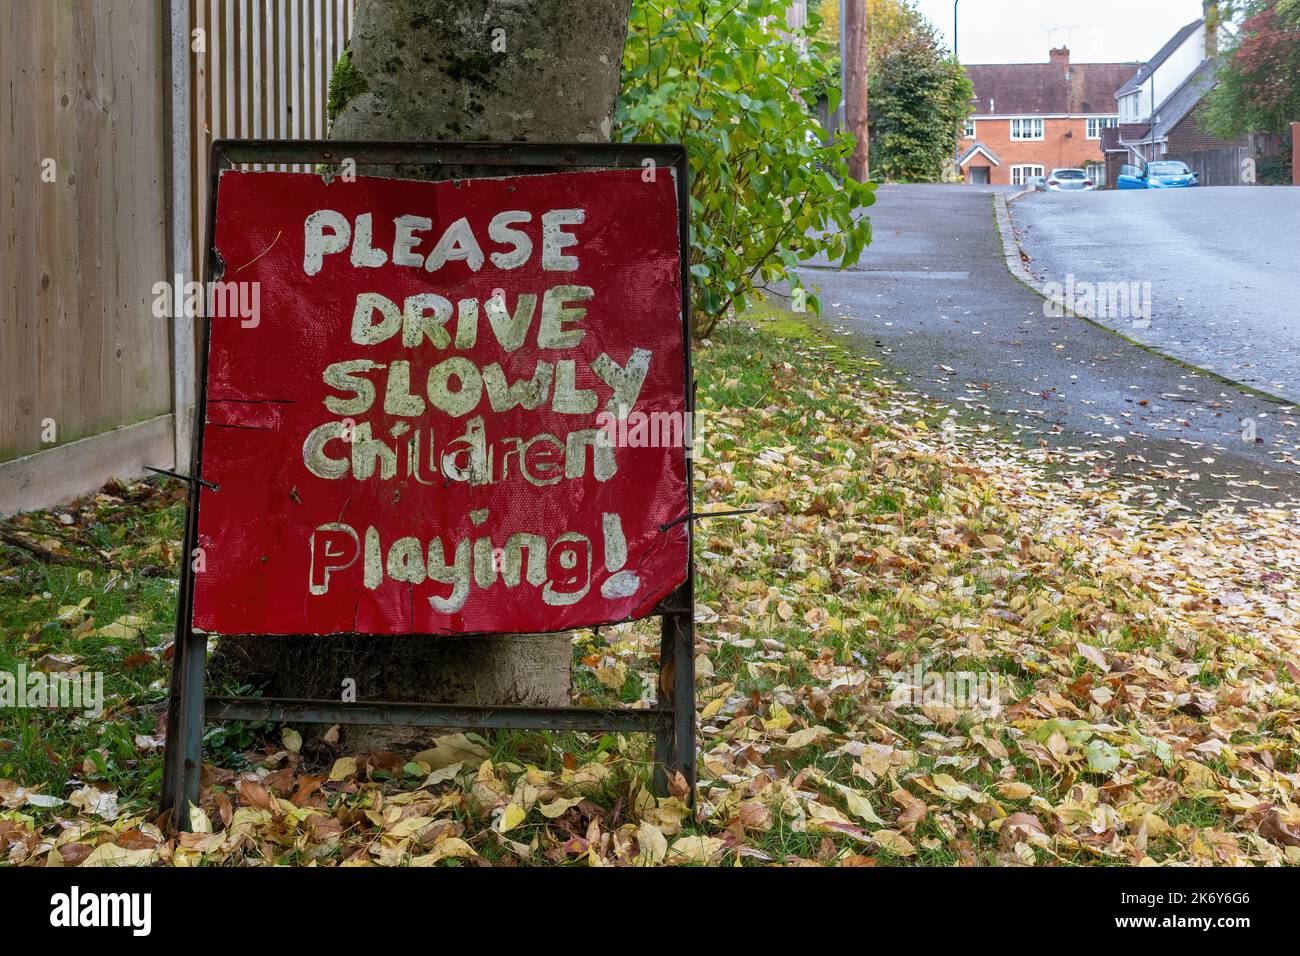 Bitte fahren Sie langsam spielende Kinder, rotes Straßenschild in Wohngebiet, Großbritannien Stockfoto